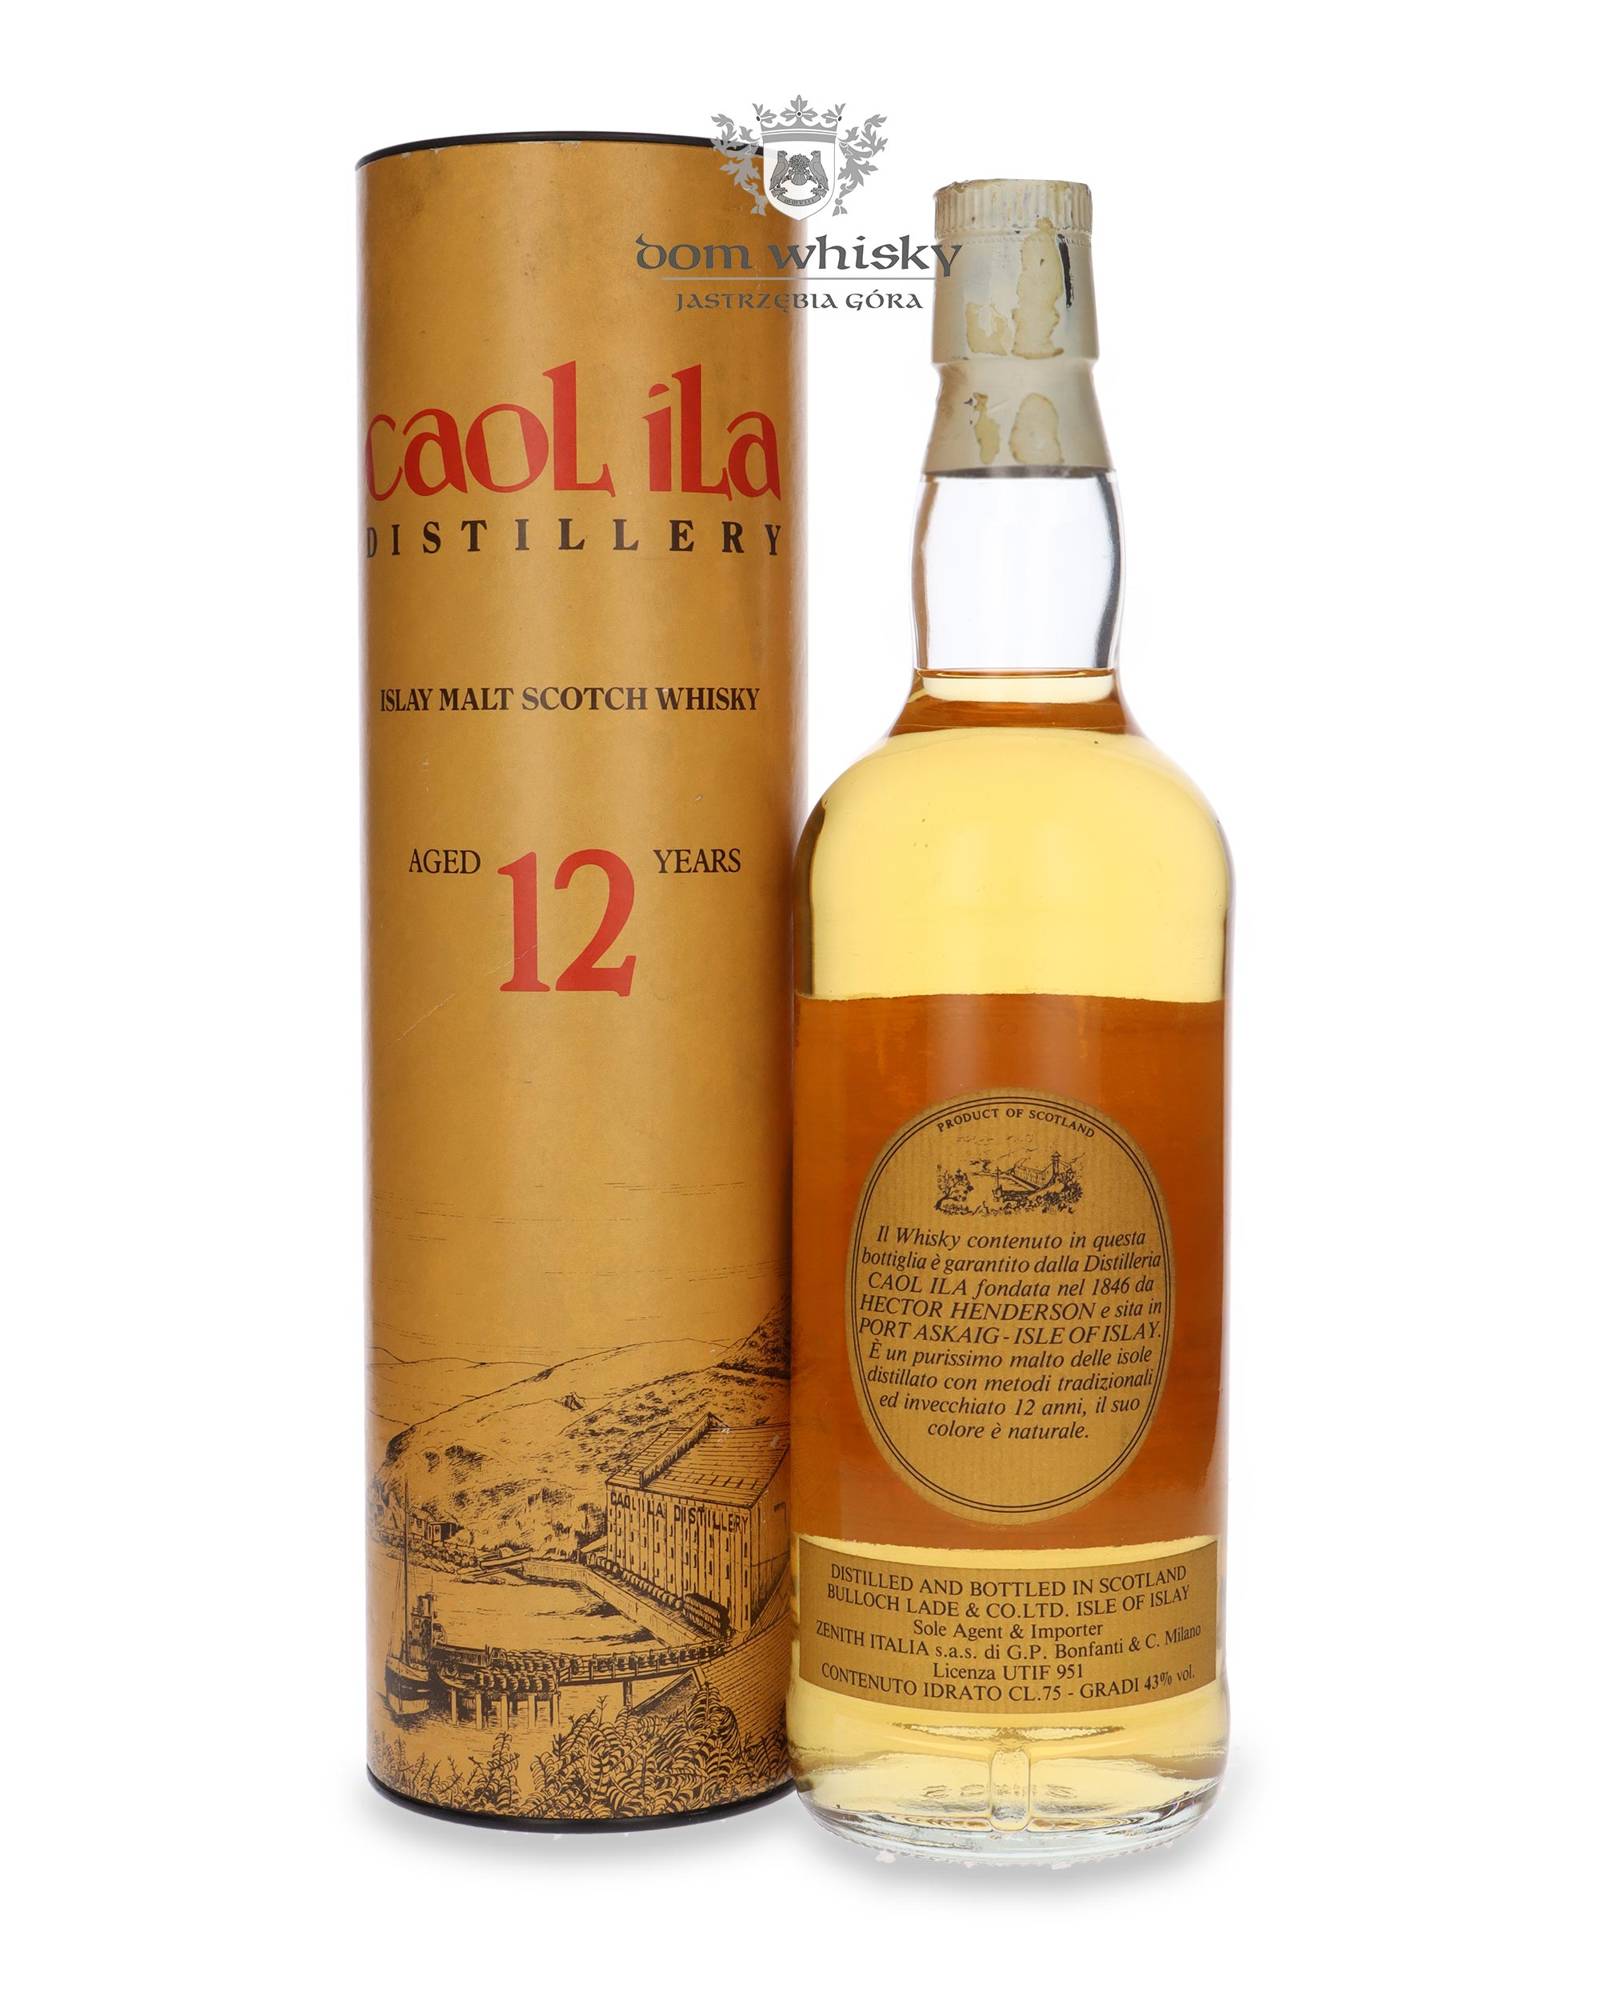 Caol Ila Moch Scotch Whisky 0,7L (43% Vol.) - Caol Ila - Whisky